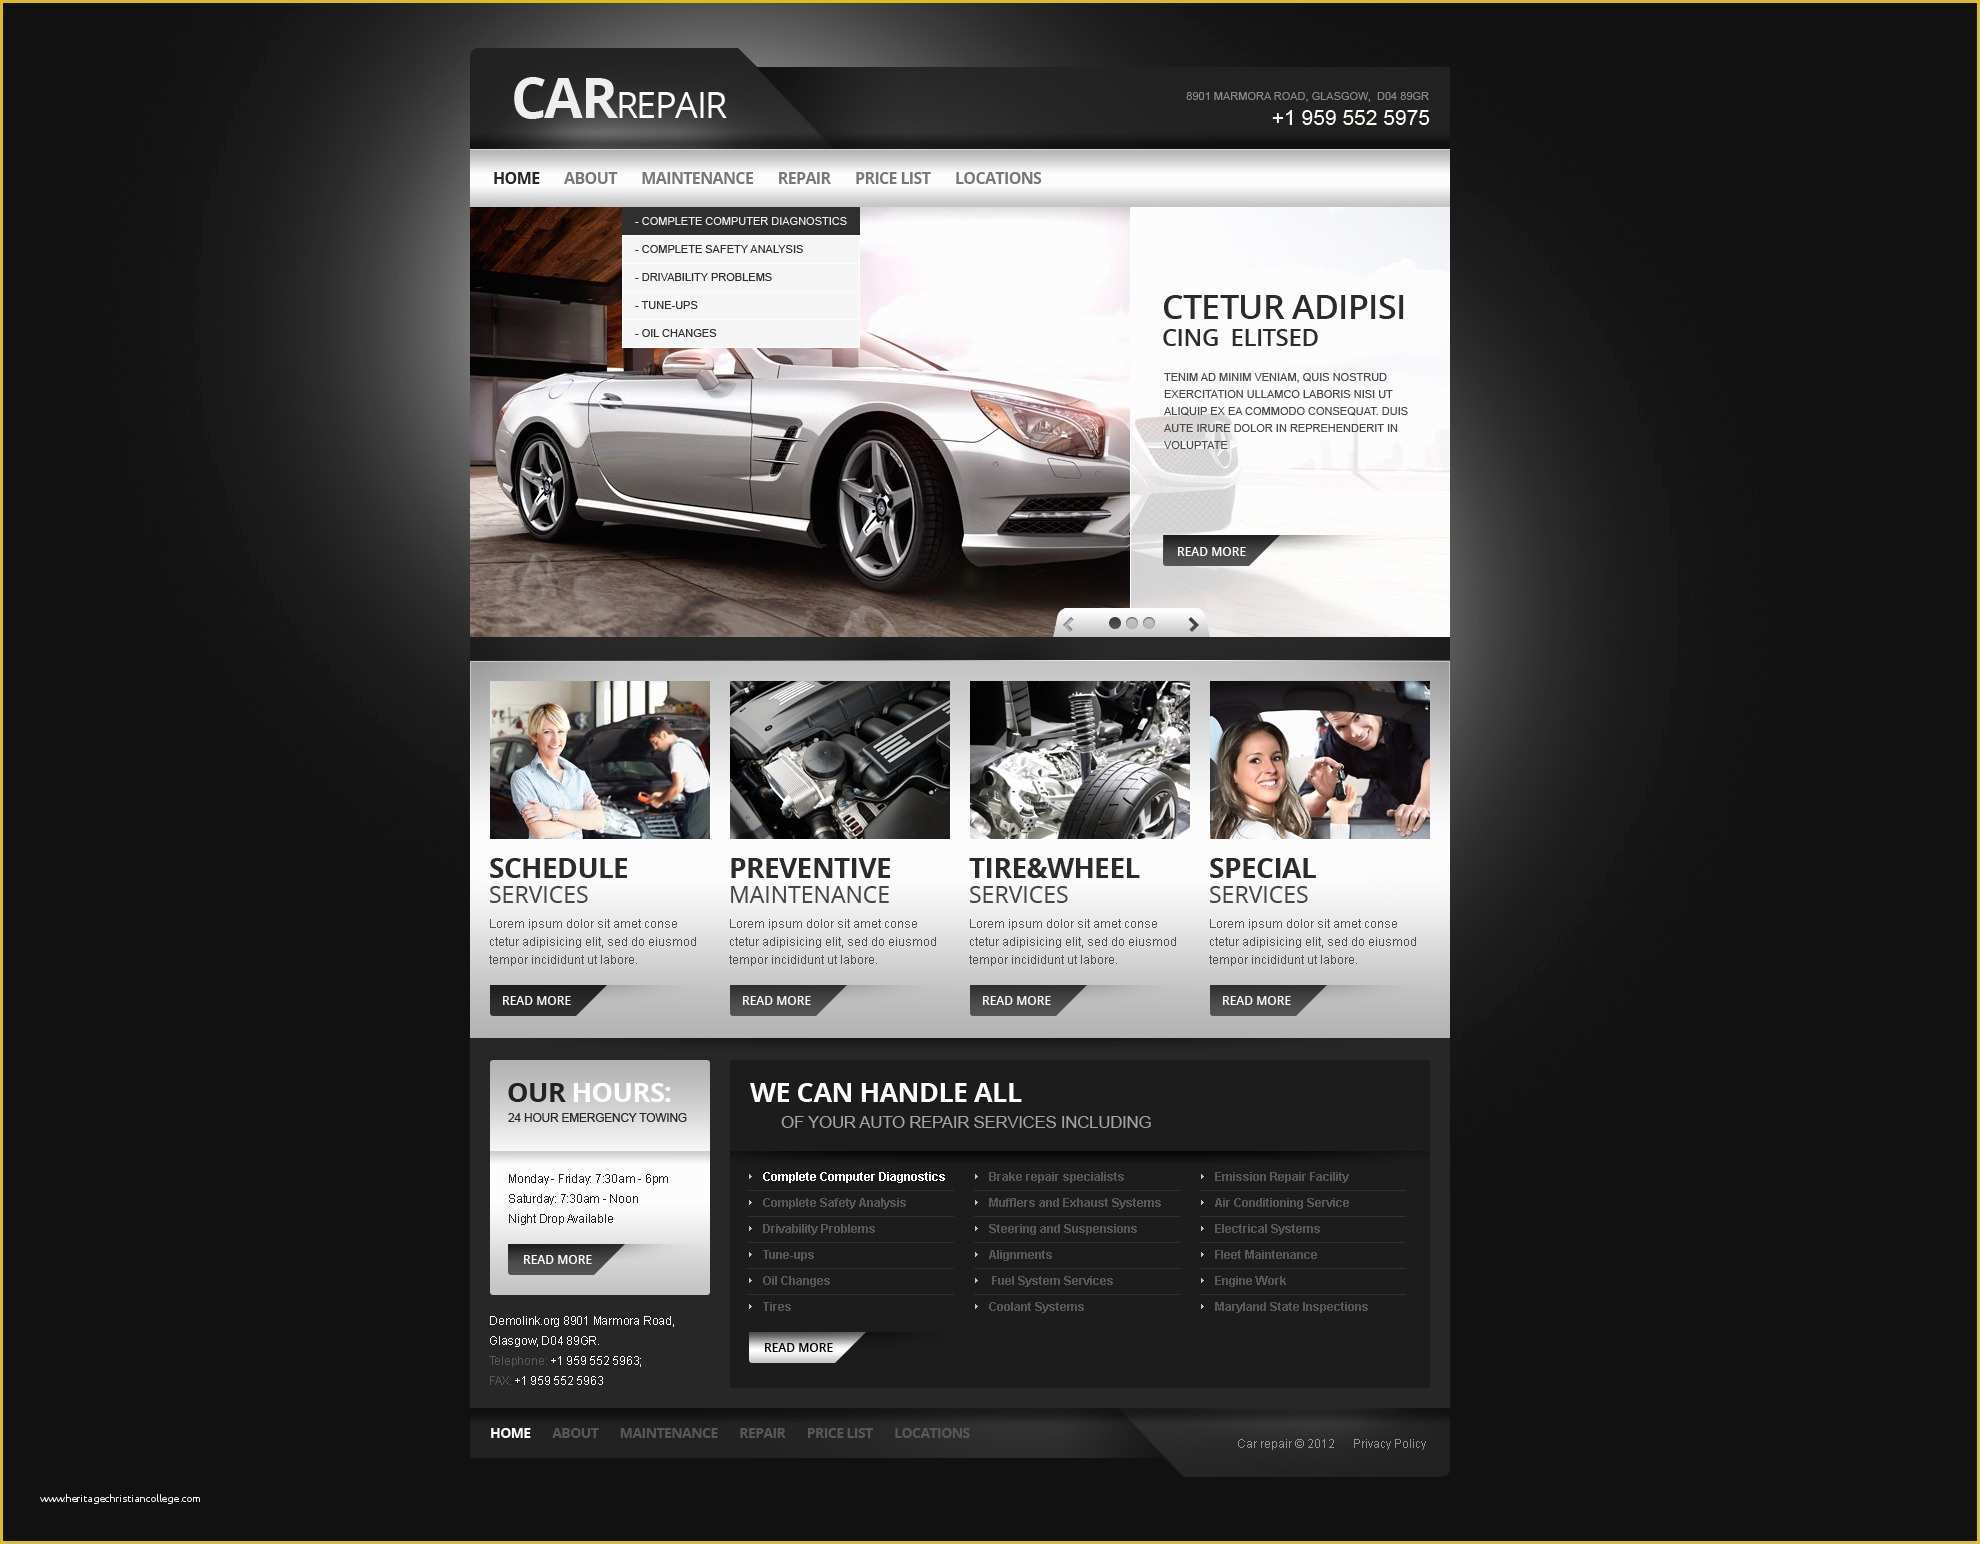 Car Repair Responsive Website Template Free Download Of Car Repair Responsive Website Template